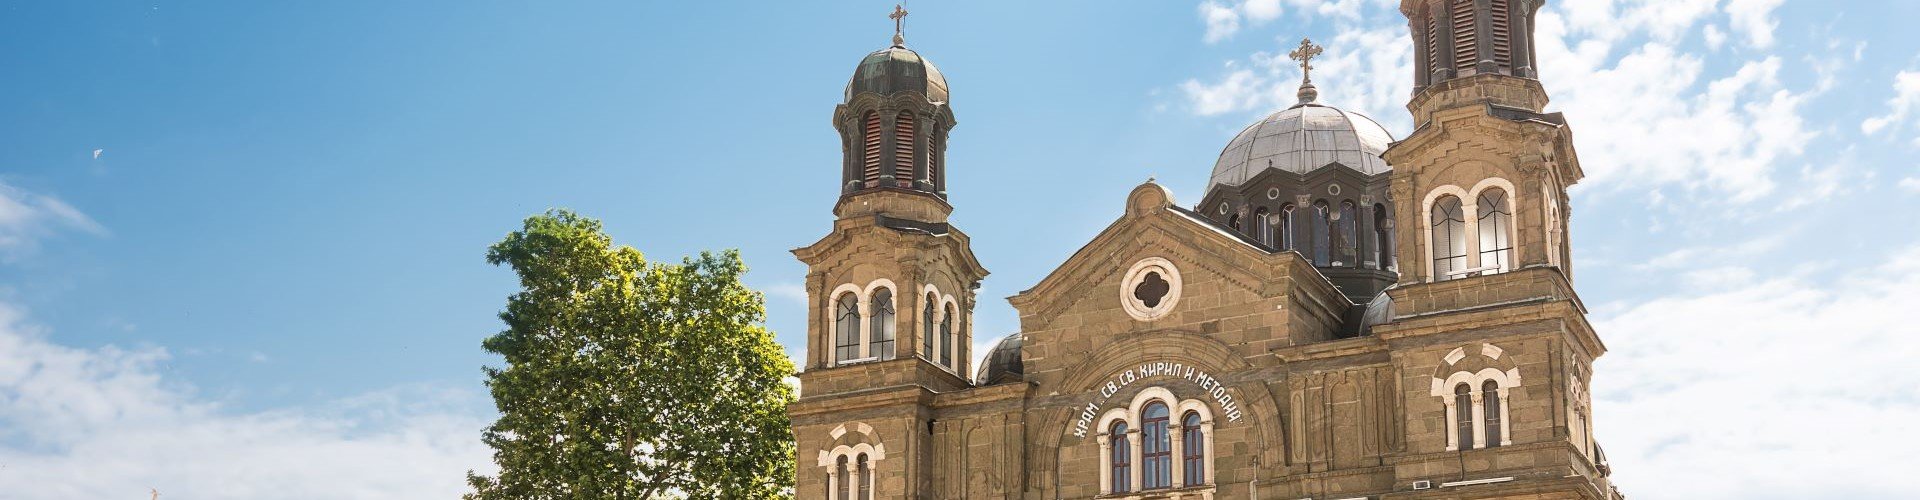 Ausflugsziel Kathedrale Heilige Brüder Kiril & Methodius